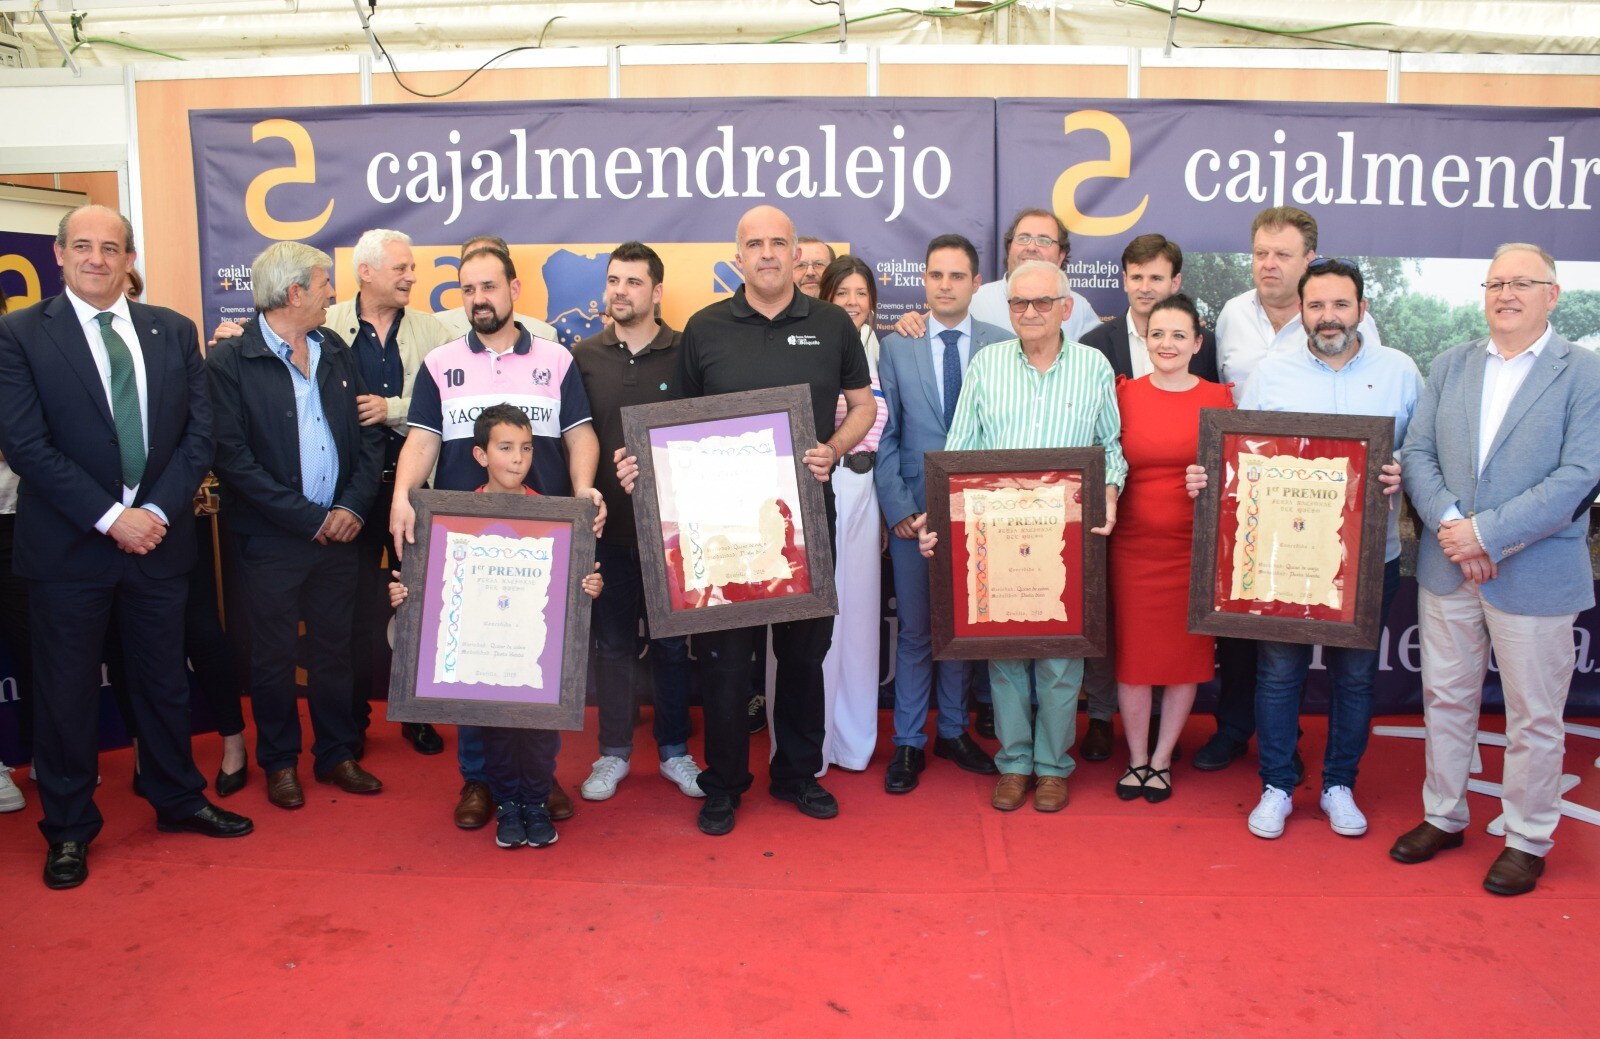 Ganadores y organizadores de la cata en Trujillo. J.S.P.